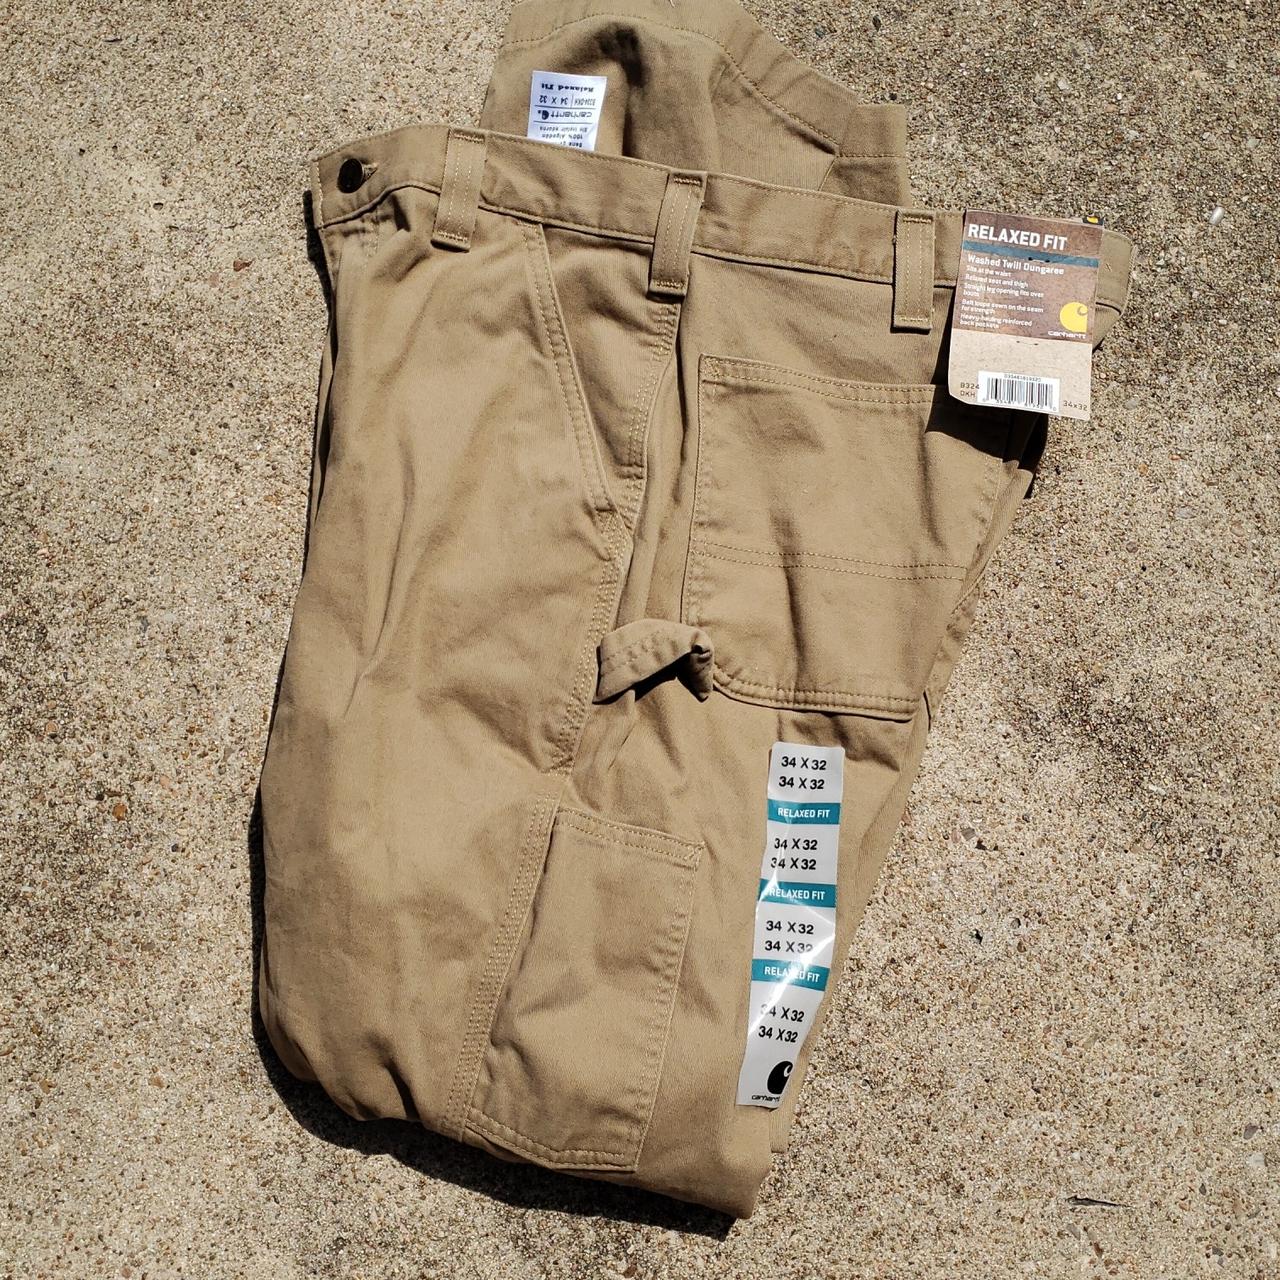 Size 14 original fit women's Carhartt work pants. - Depop